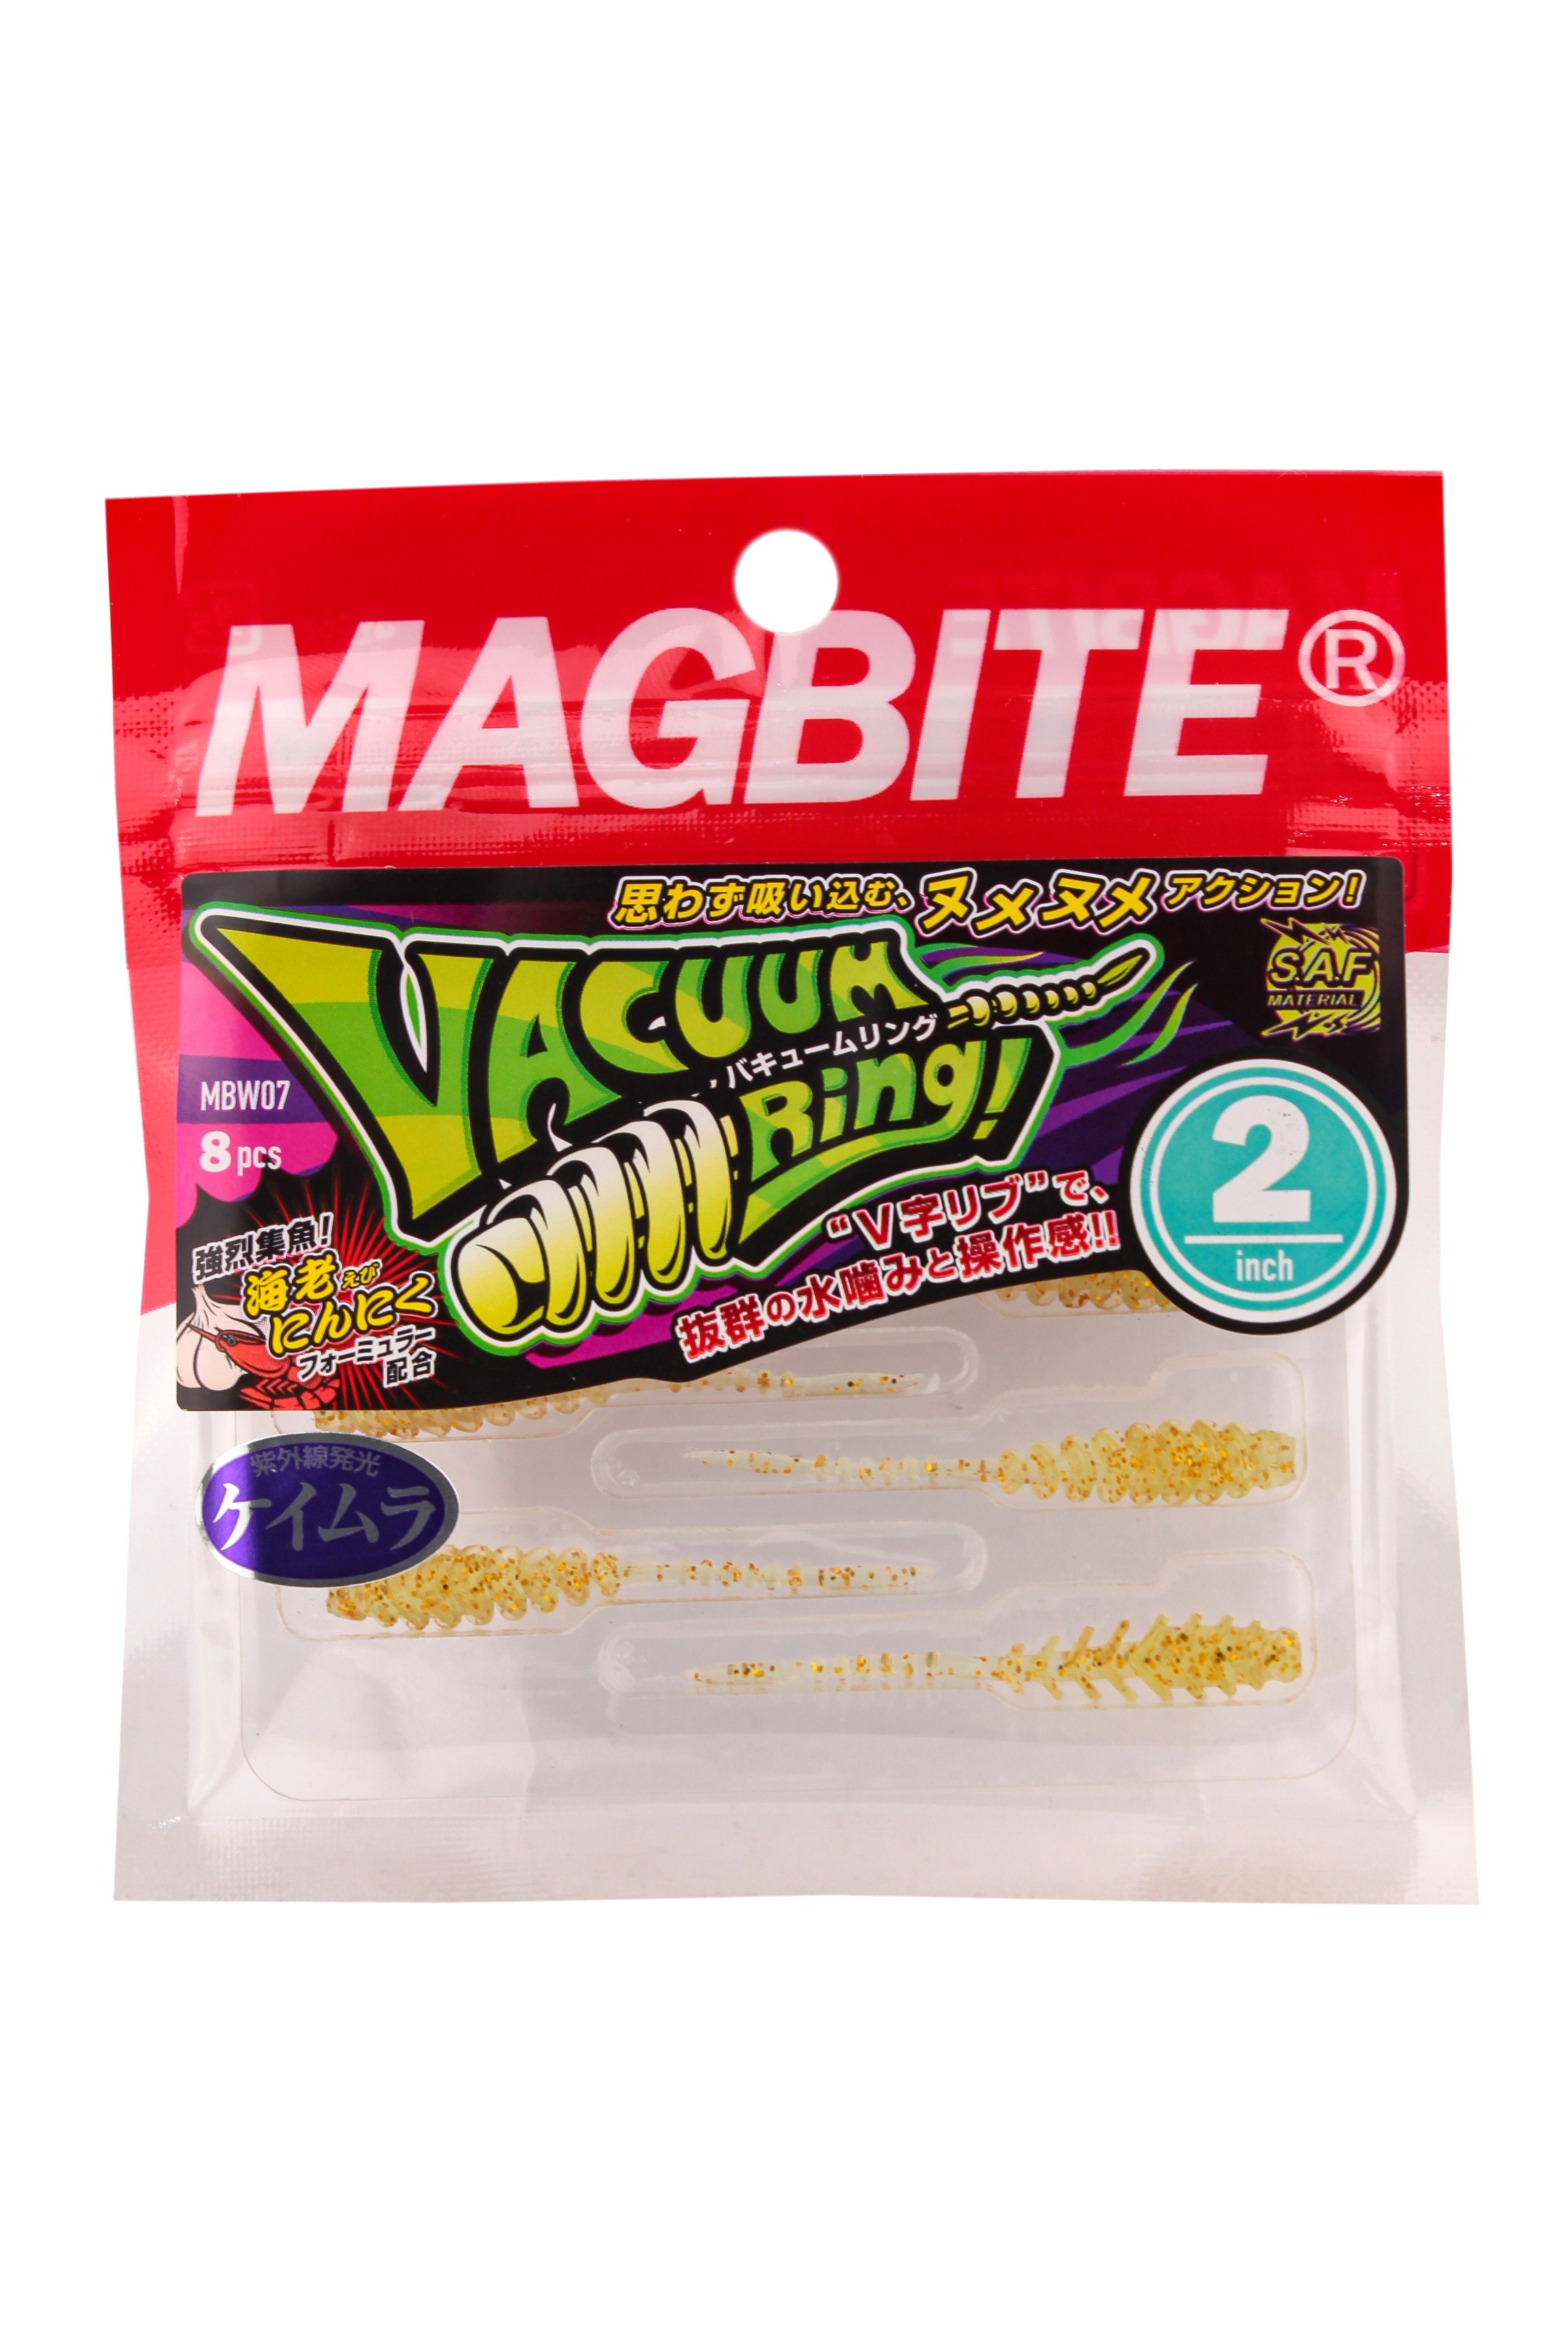 Приманка Magbite MBW07 Vacum Ring 2,0" цв.05 - фото 1